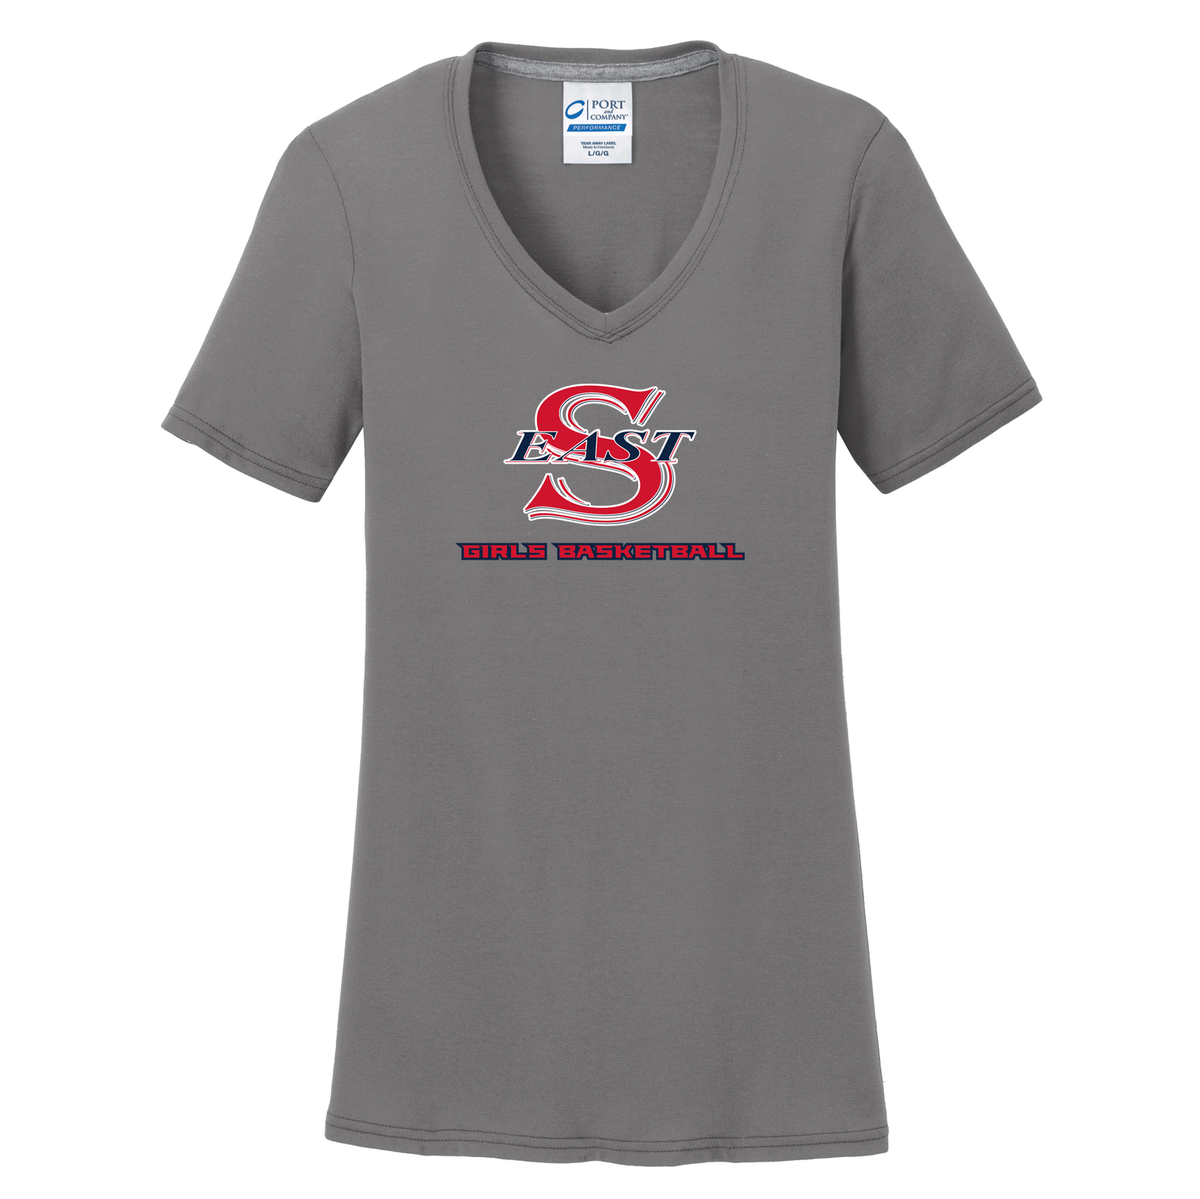 Smithtown East Girls Basketball Women's T-Shirt